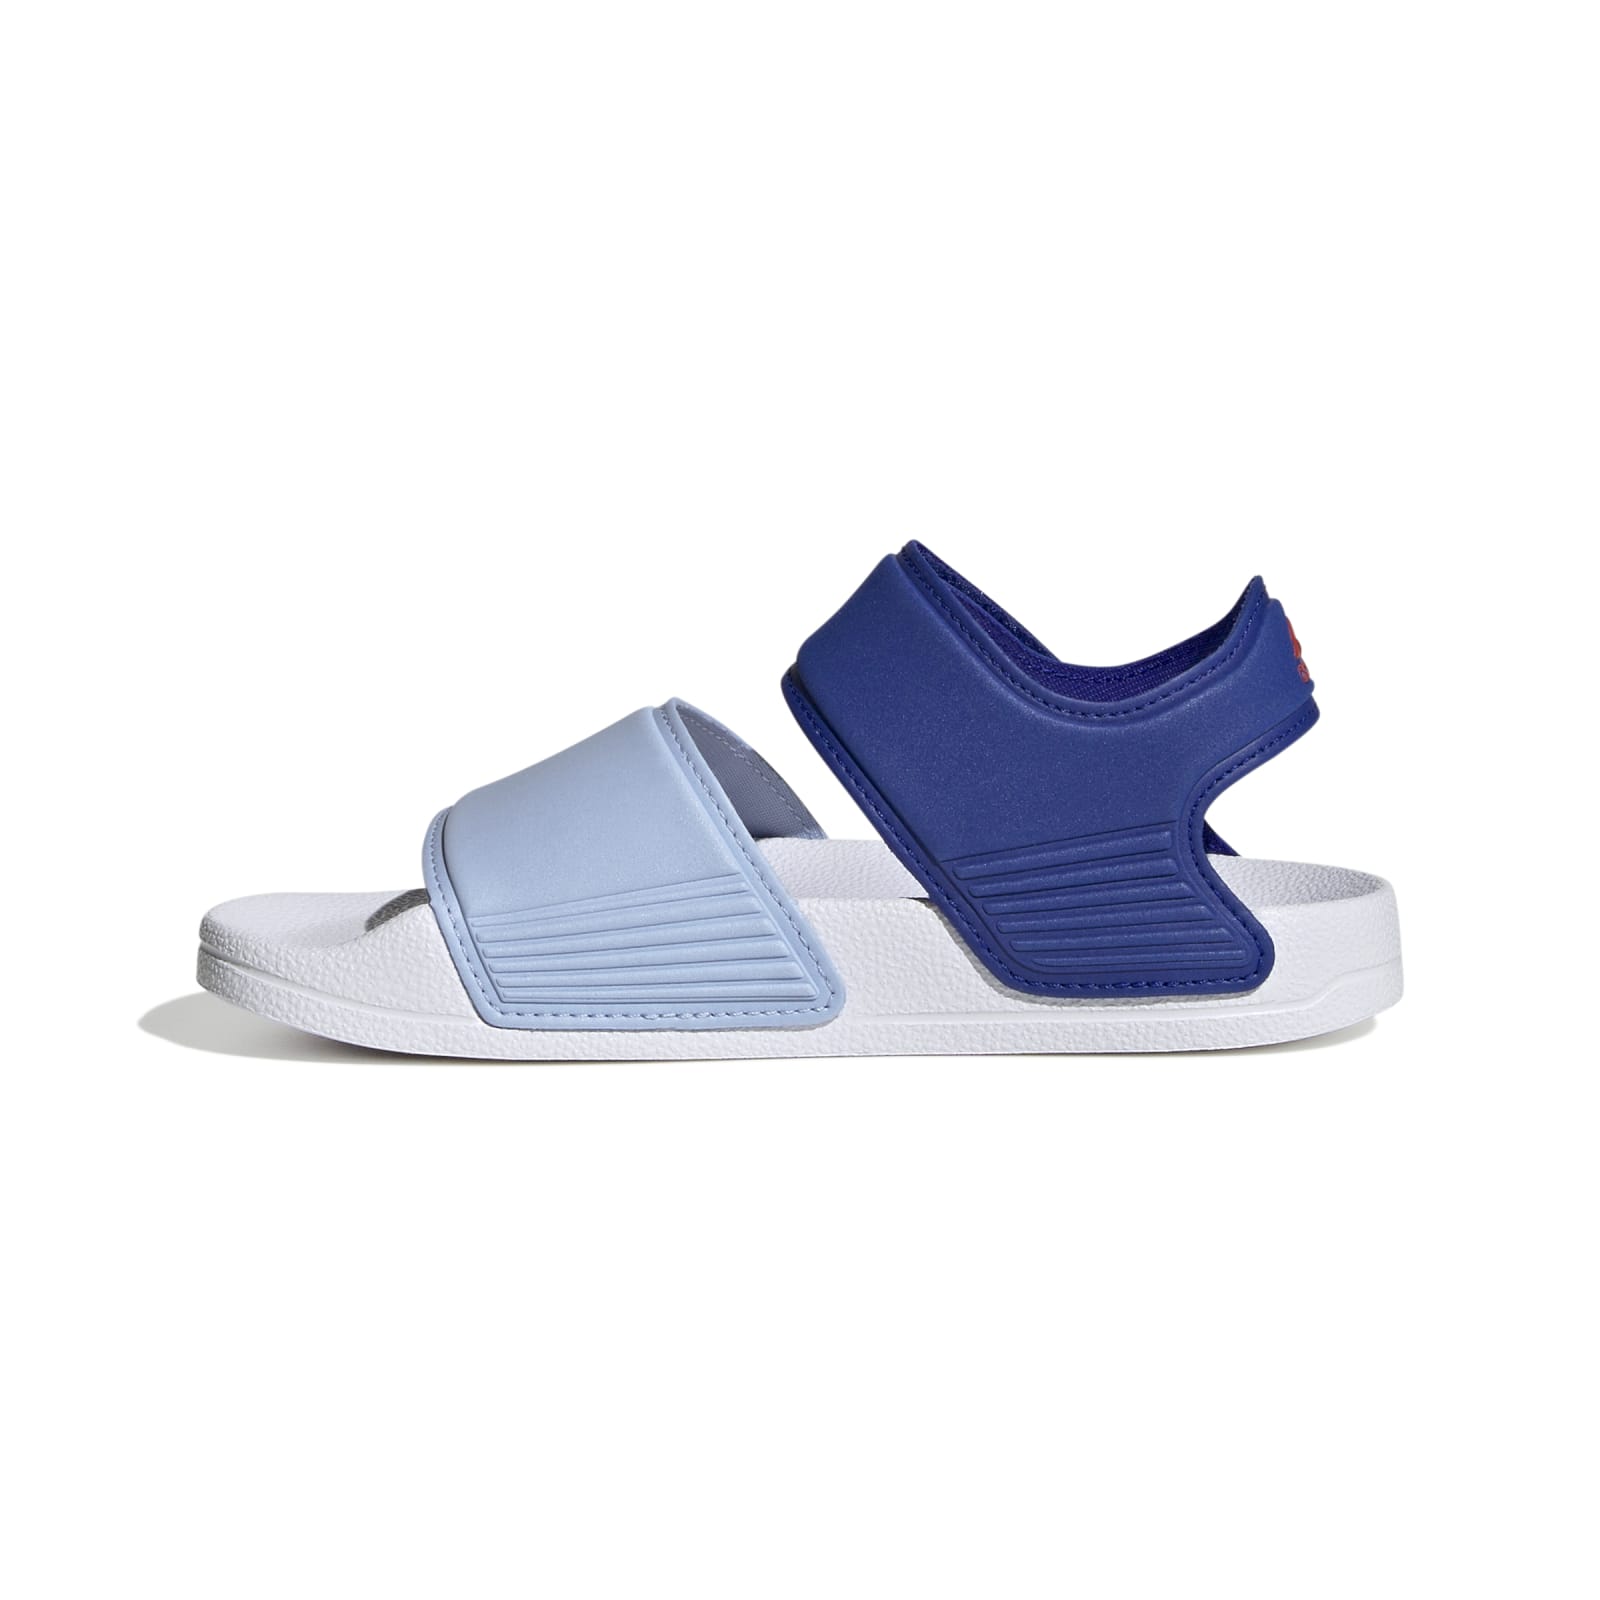 Kinder adidas Adilette Sandale Badeschuhe blau/hellblau online versandkostenfrei bestellen (Klettverschluss)